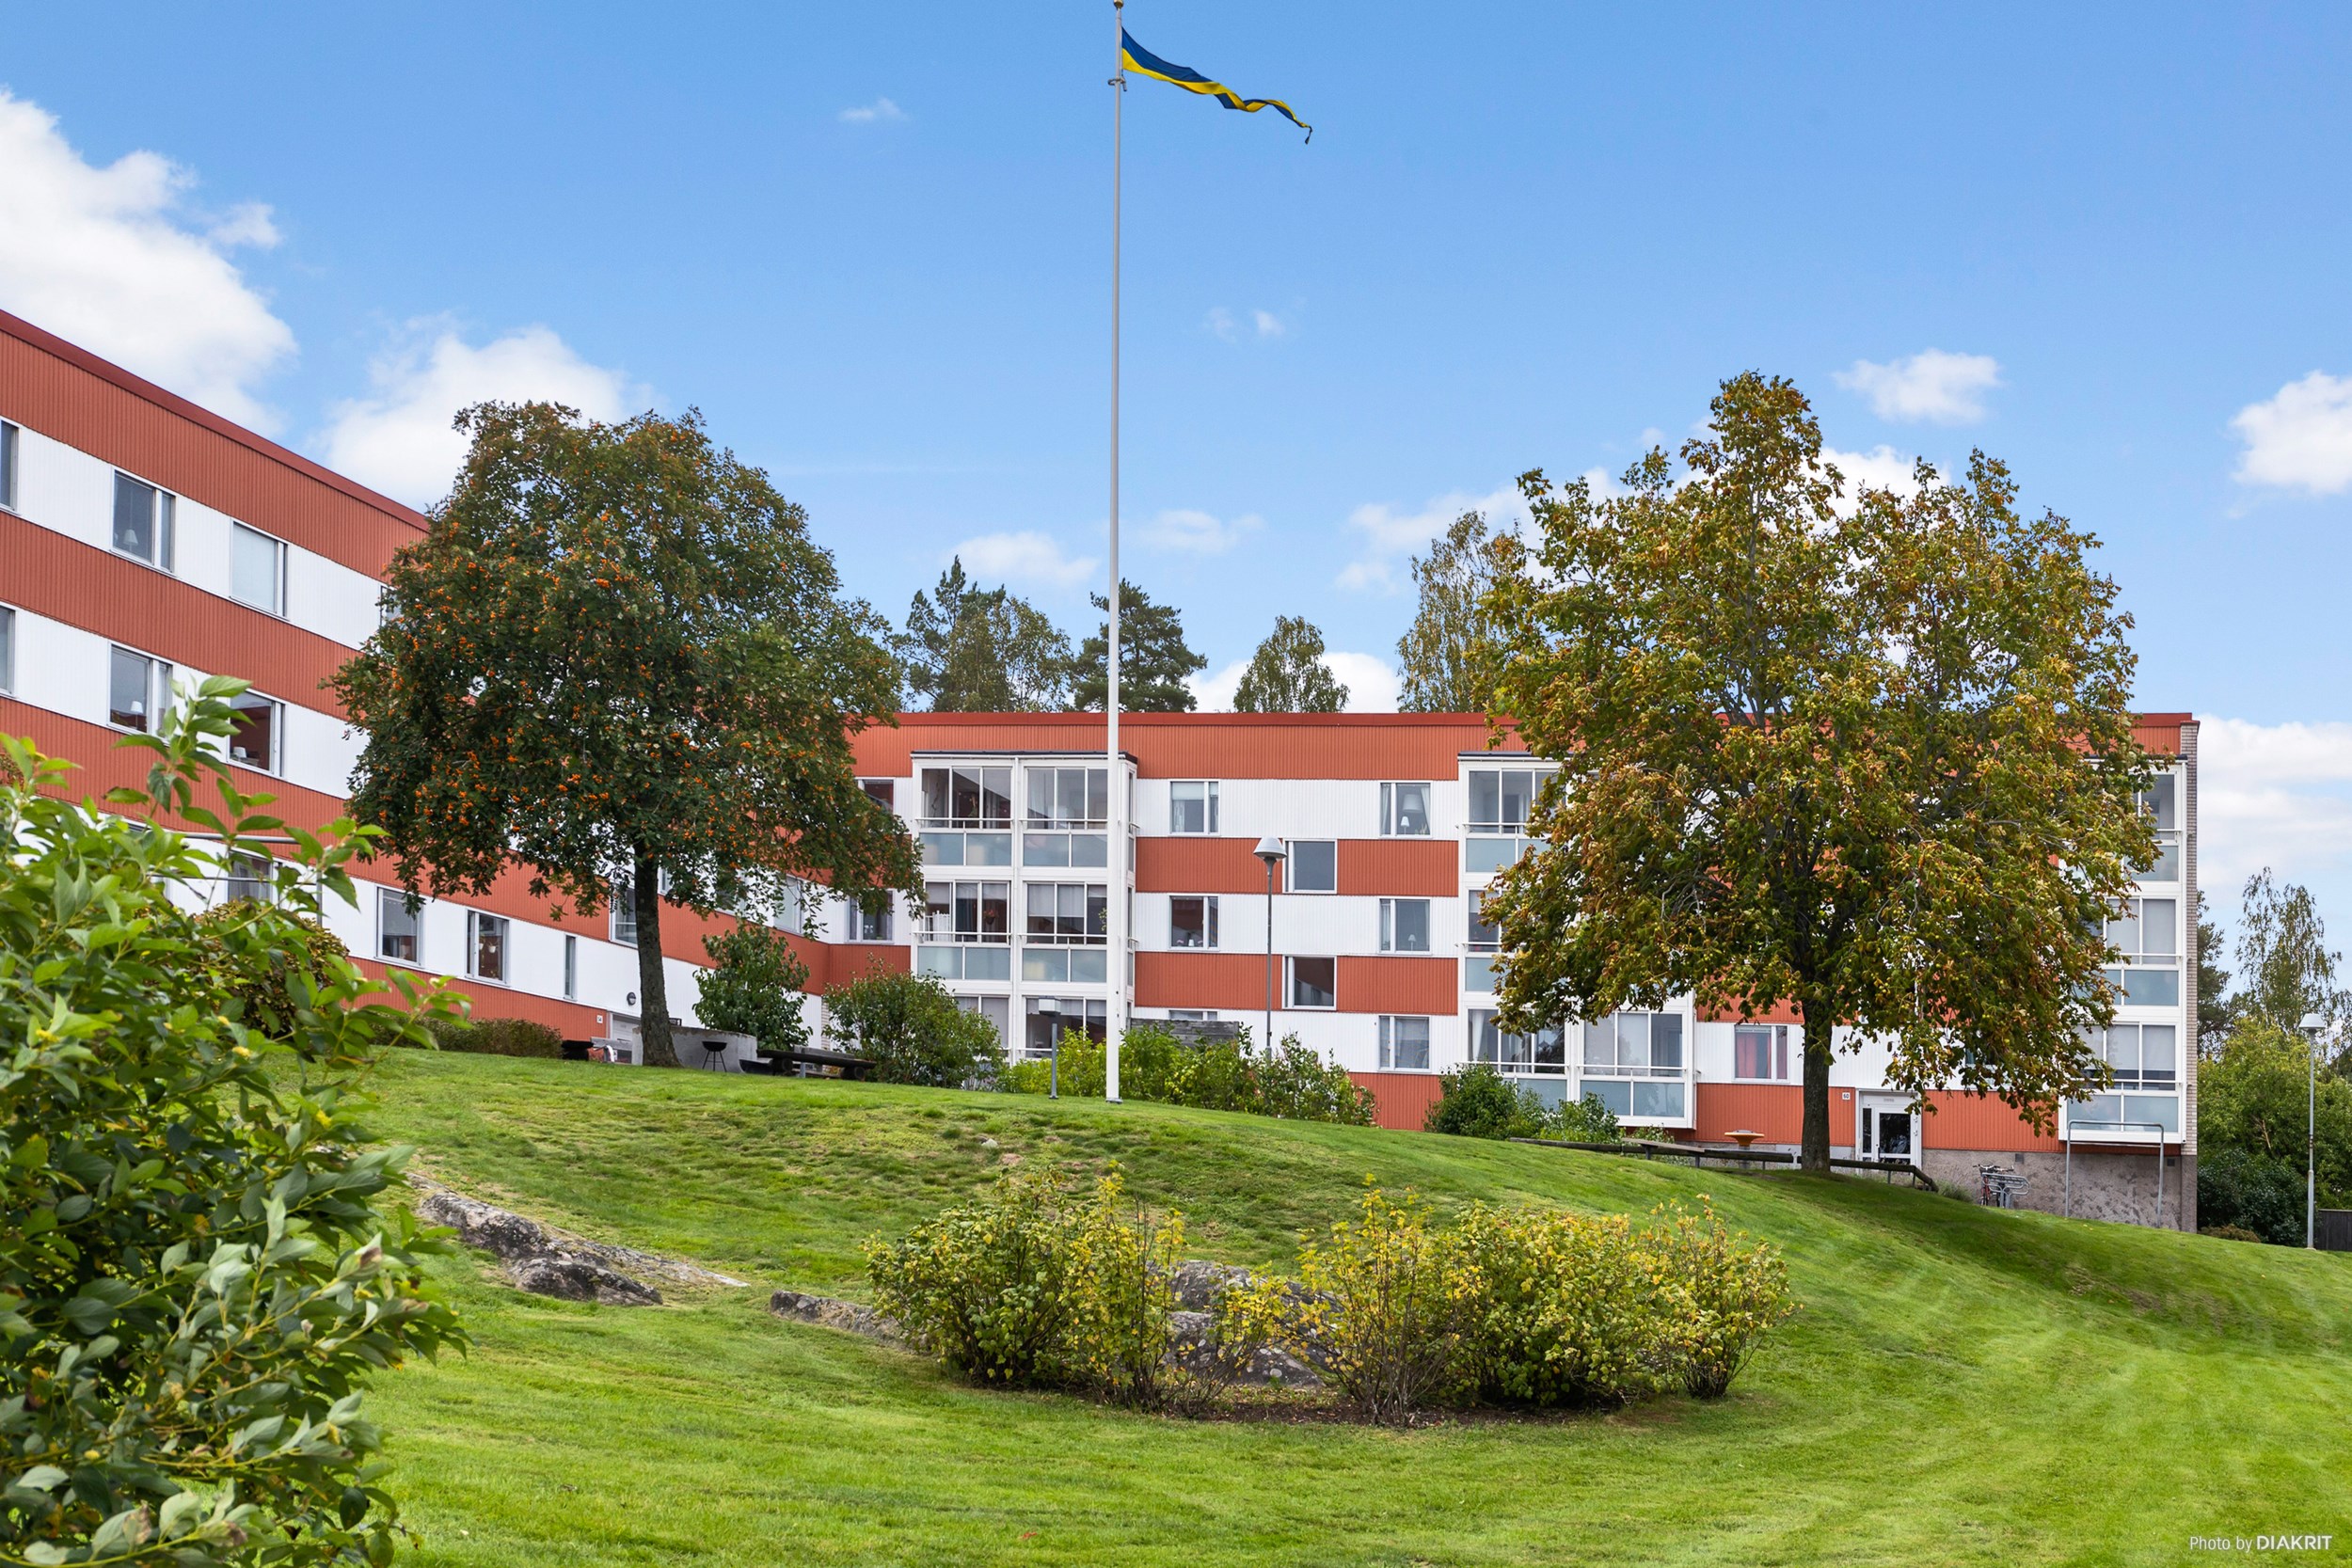 Horsensgatan 58 - Bostadsrättslägenhet Karlstad